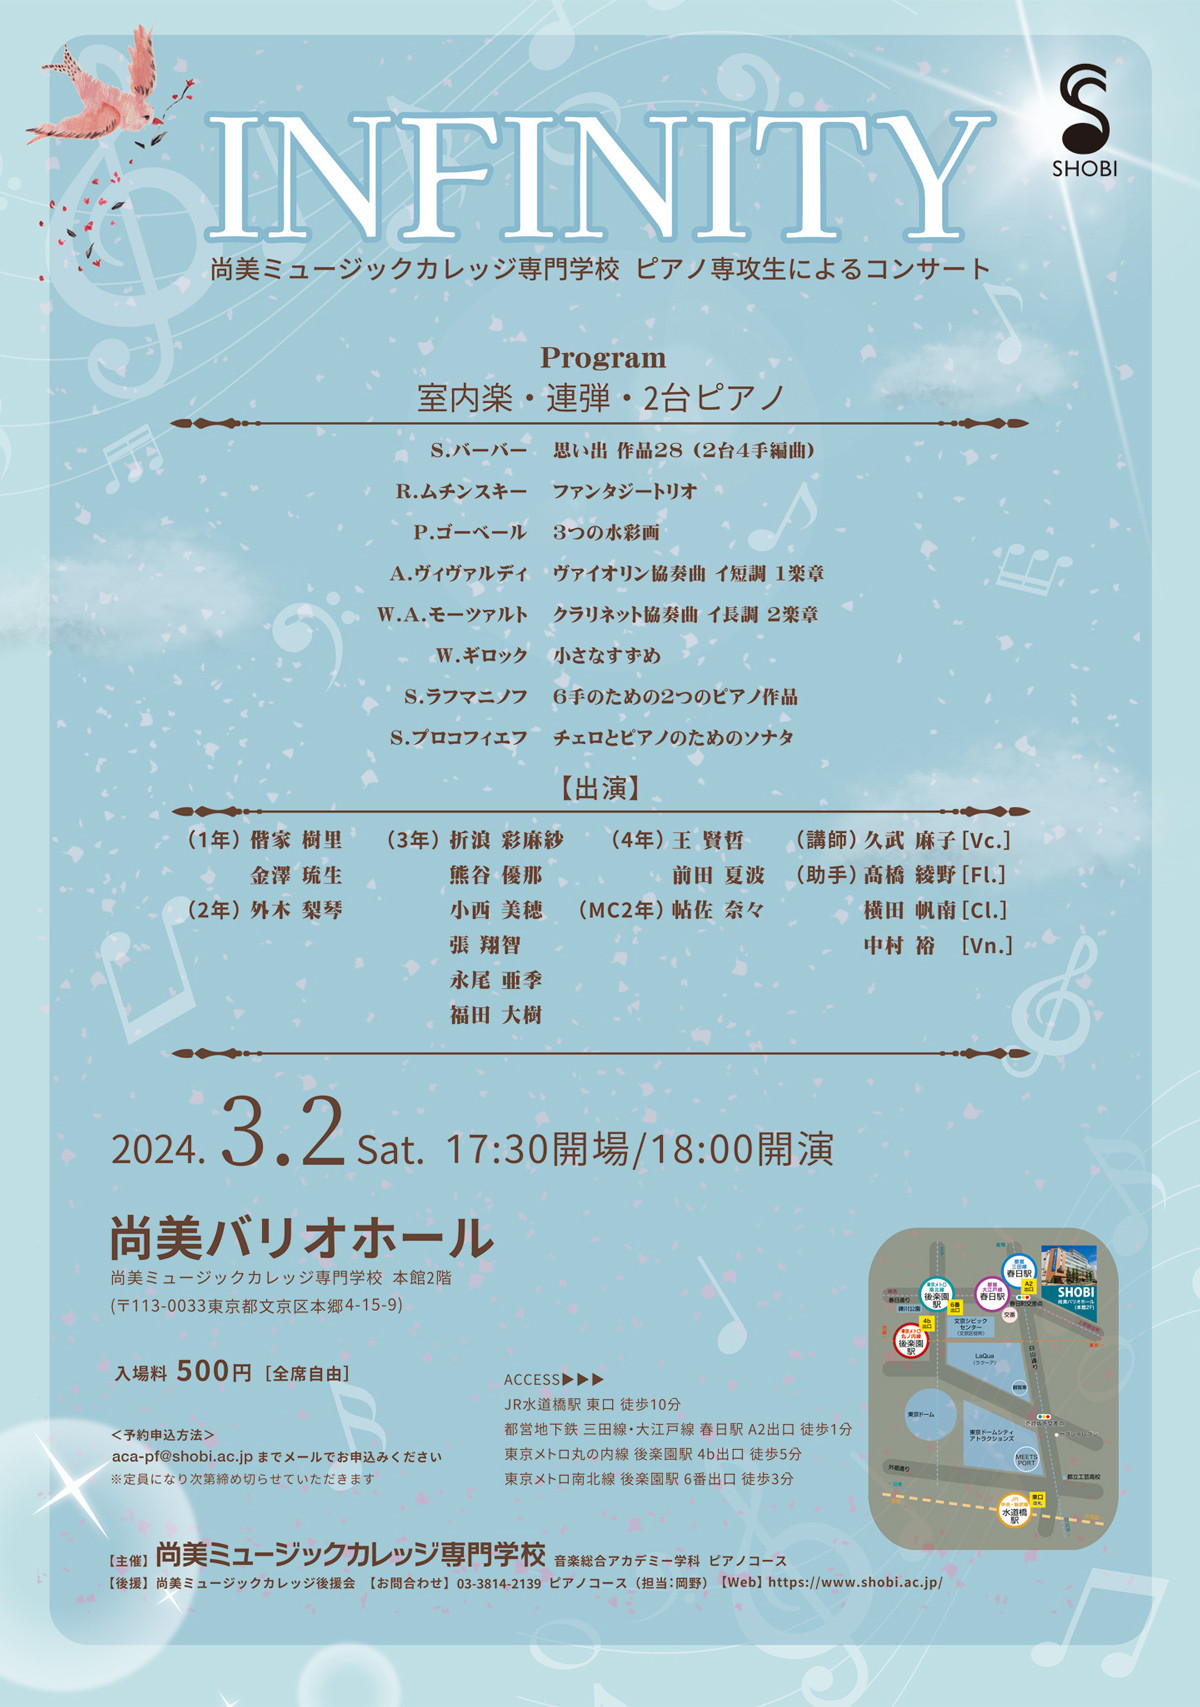 【3月2日開催】音楽総合アカデミー学科ピアノコースコンサート「INFINITY」